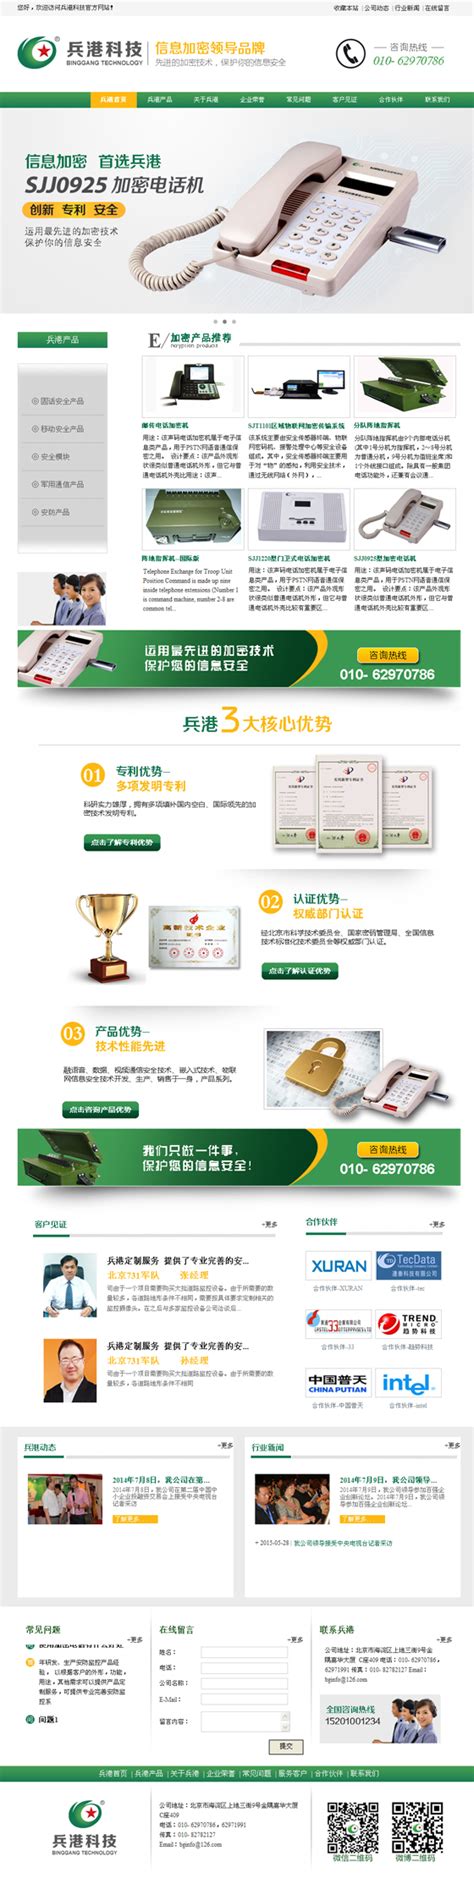 网站设计|北京品牌广告设计服务机构-尚唐设计